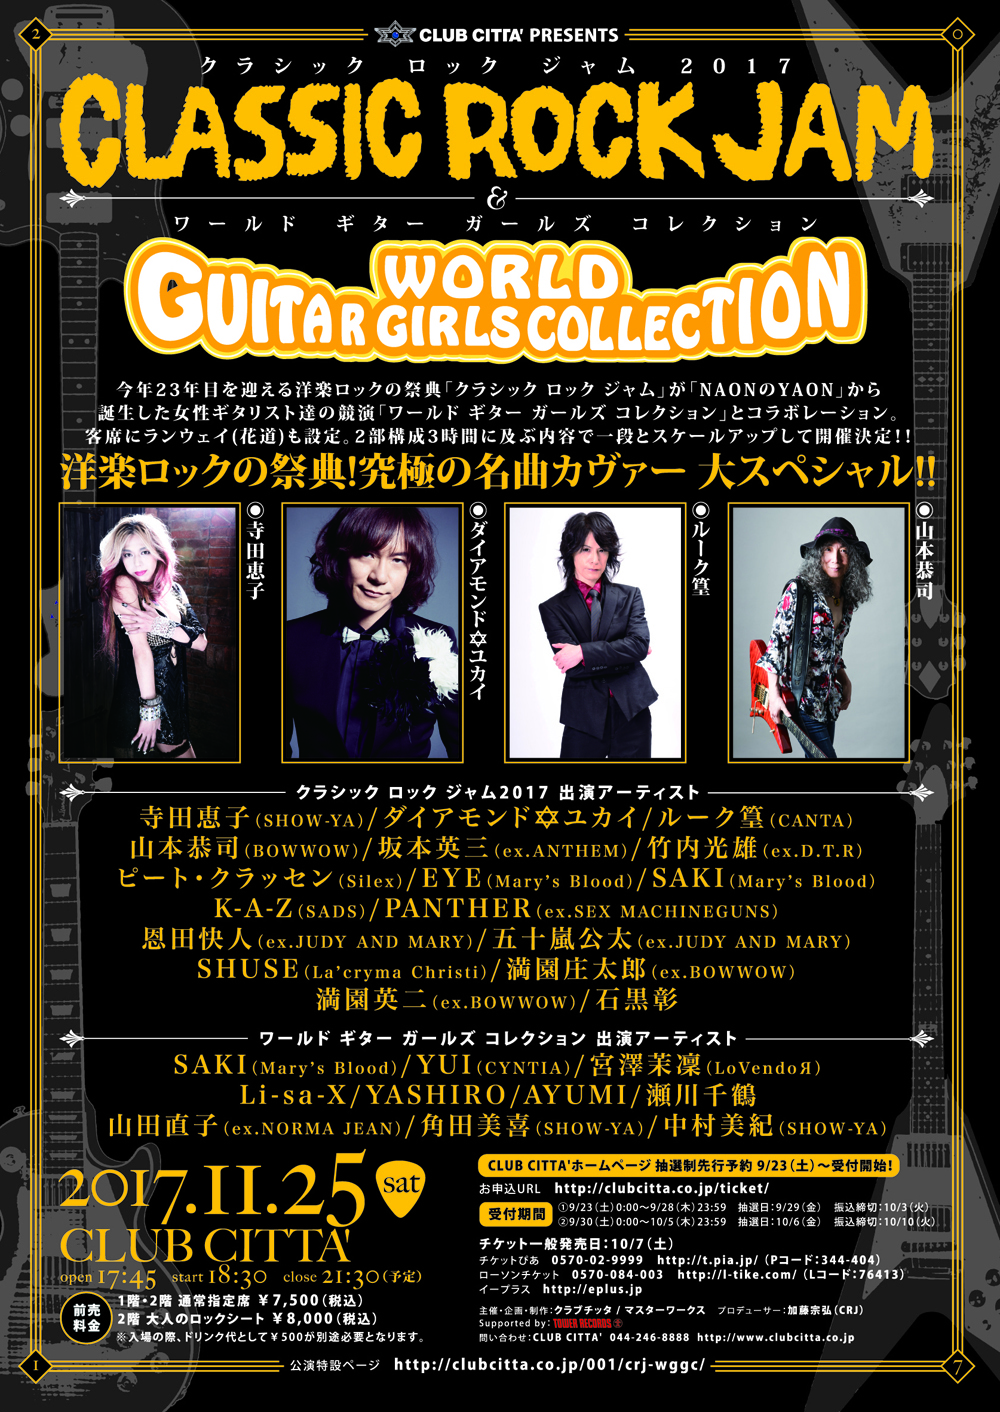 11月25日 川崎クラブチッタで行われるクラシックロックジャムに出演決定しました Kyoji Yamamoto Official Web Site